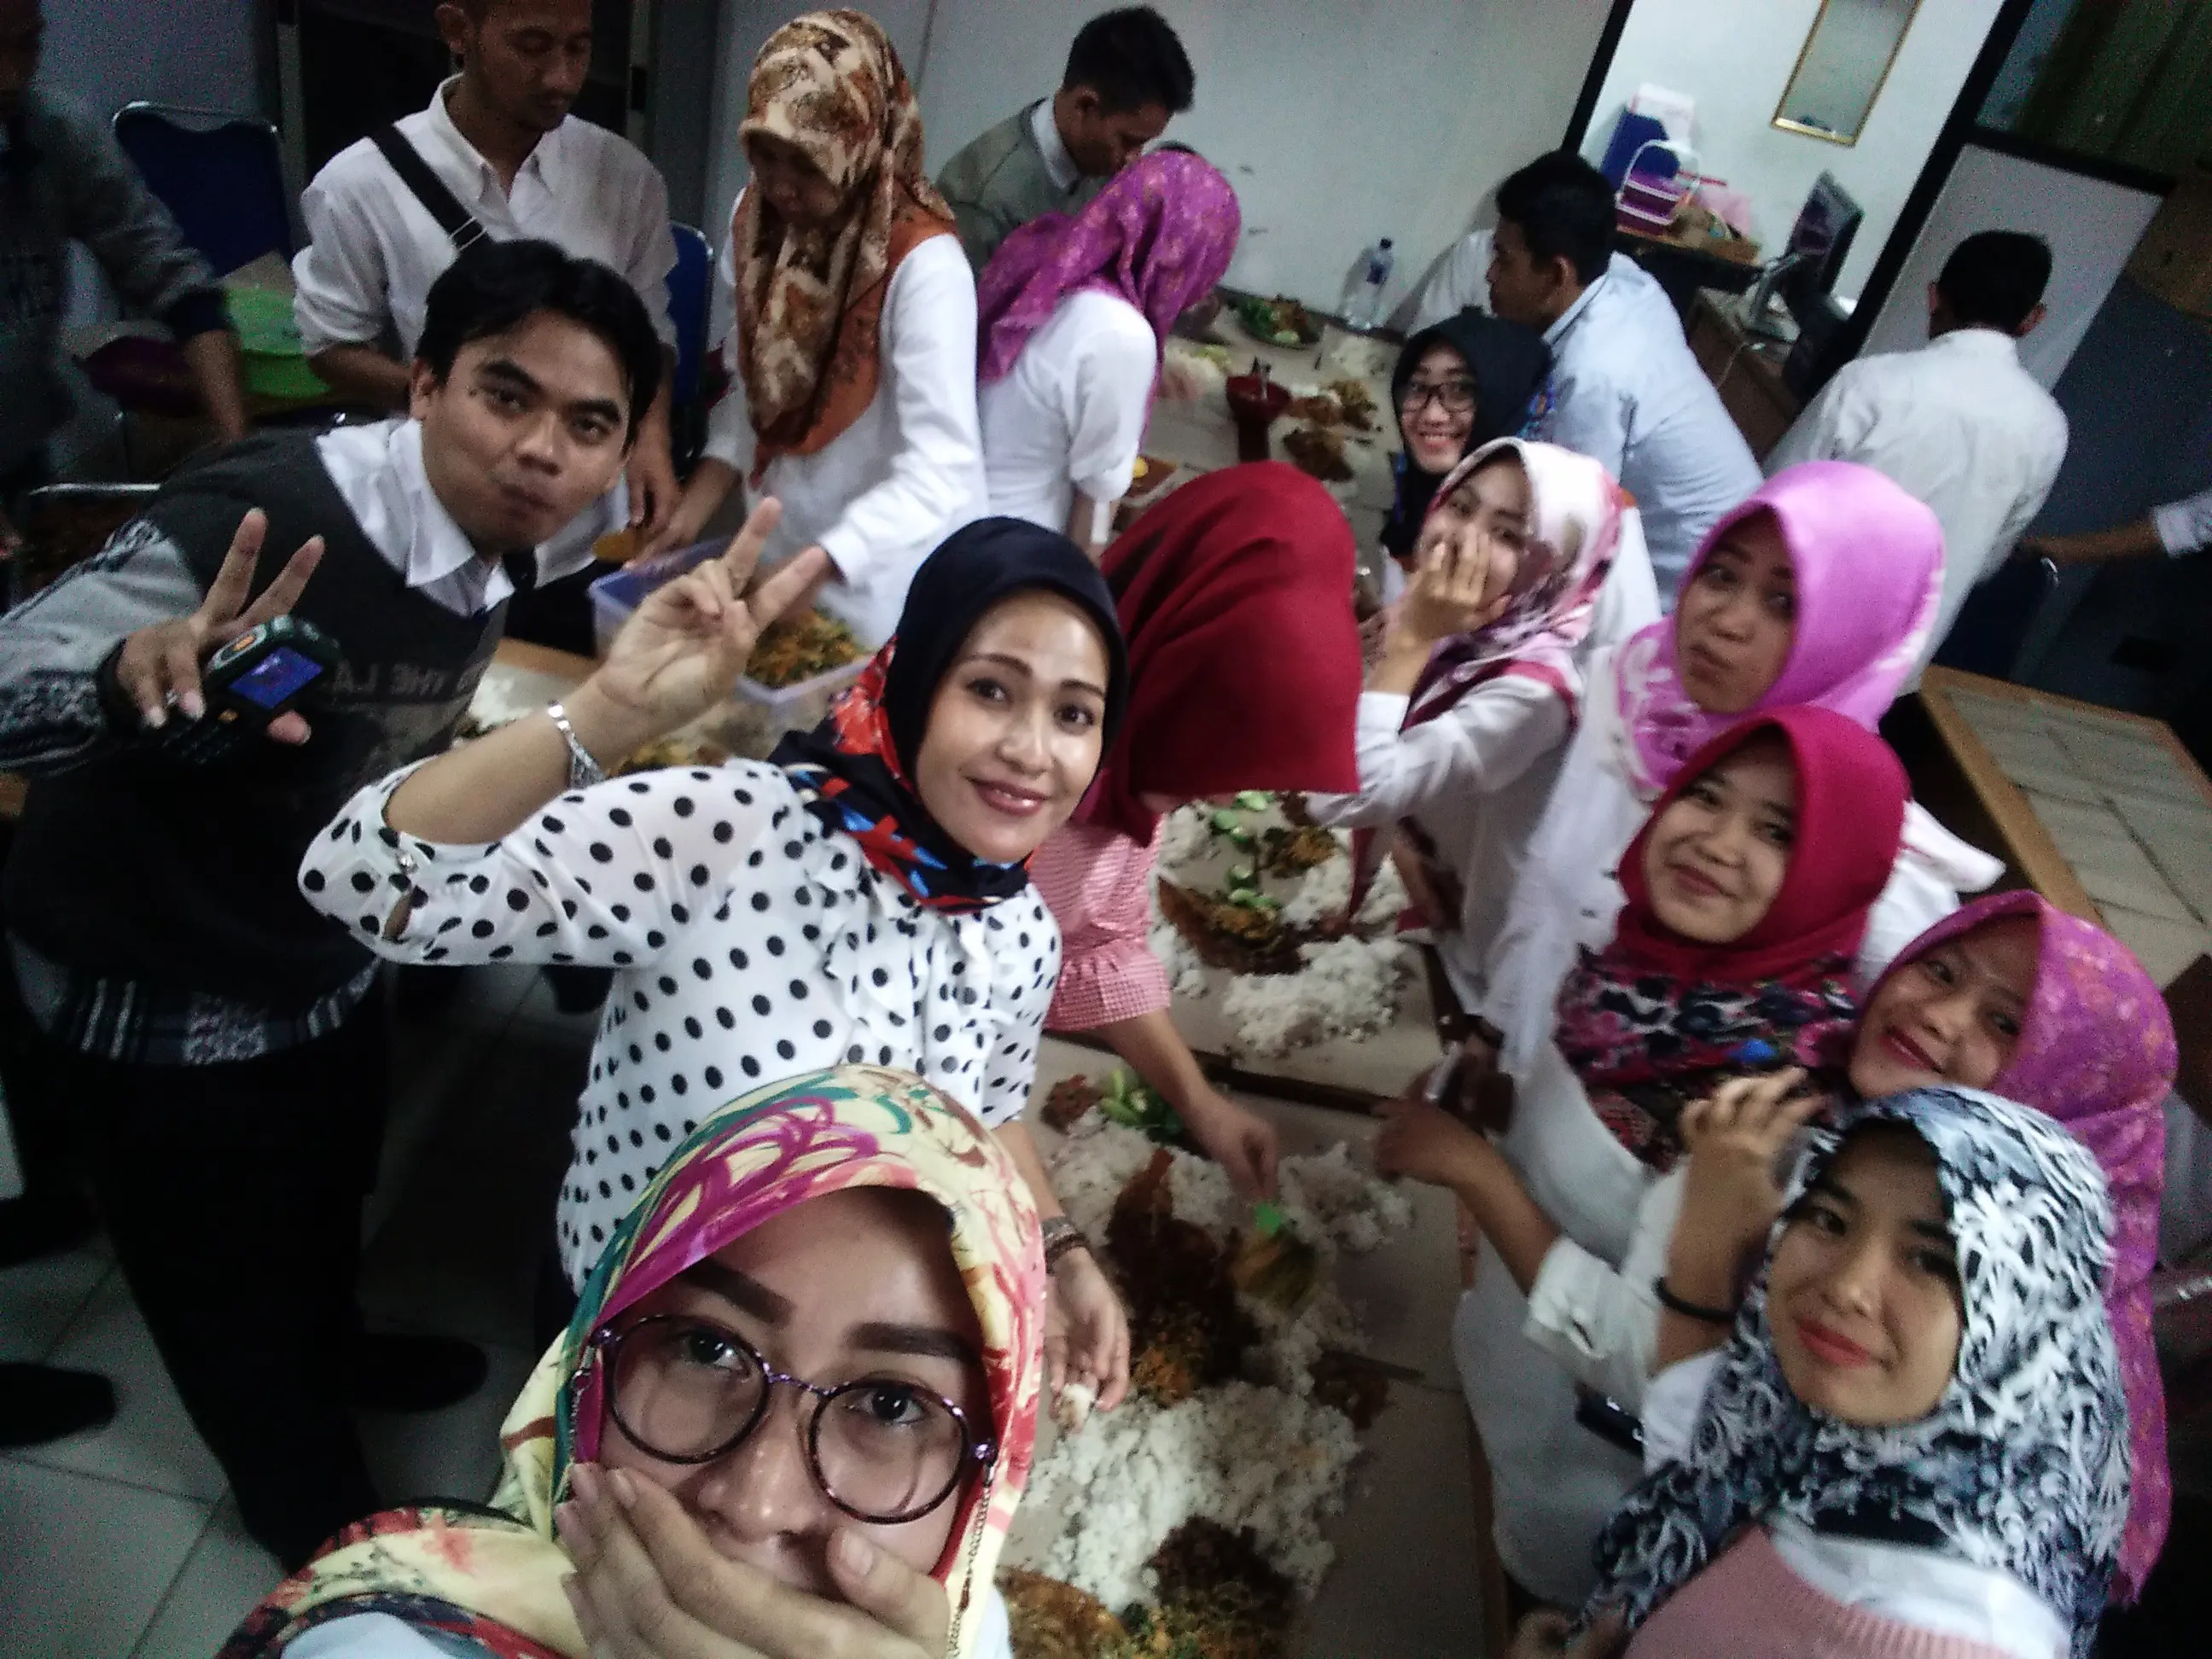 Munggahan atau tradisi penutupan sebelum bulan suci Ramadan di Banten, biasa dirayakan dengan babacakan (bancakan) atau makan bersama. (Liputan6.com/Yandhi Deslatama)